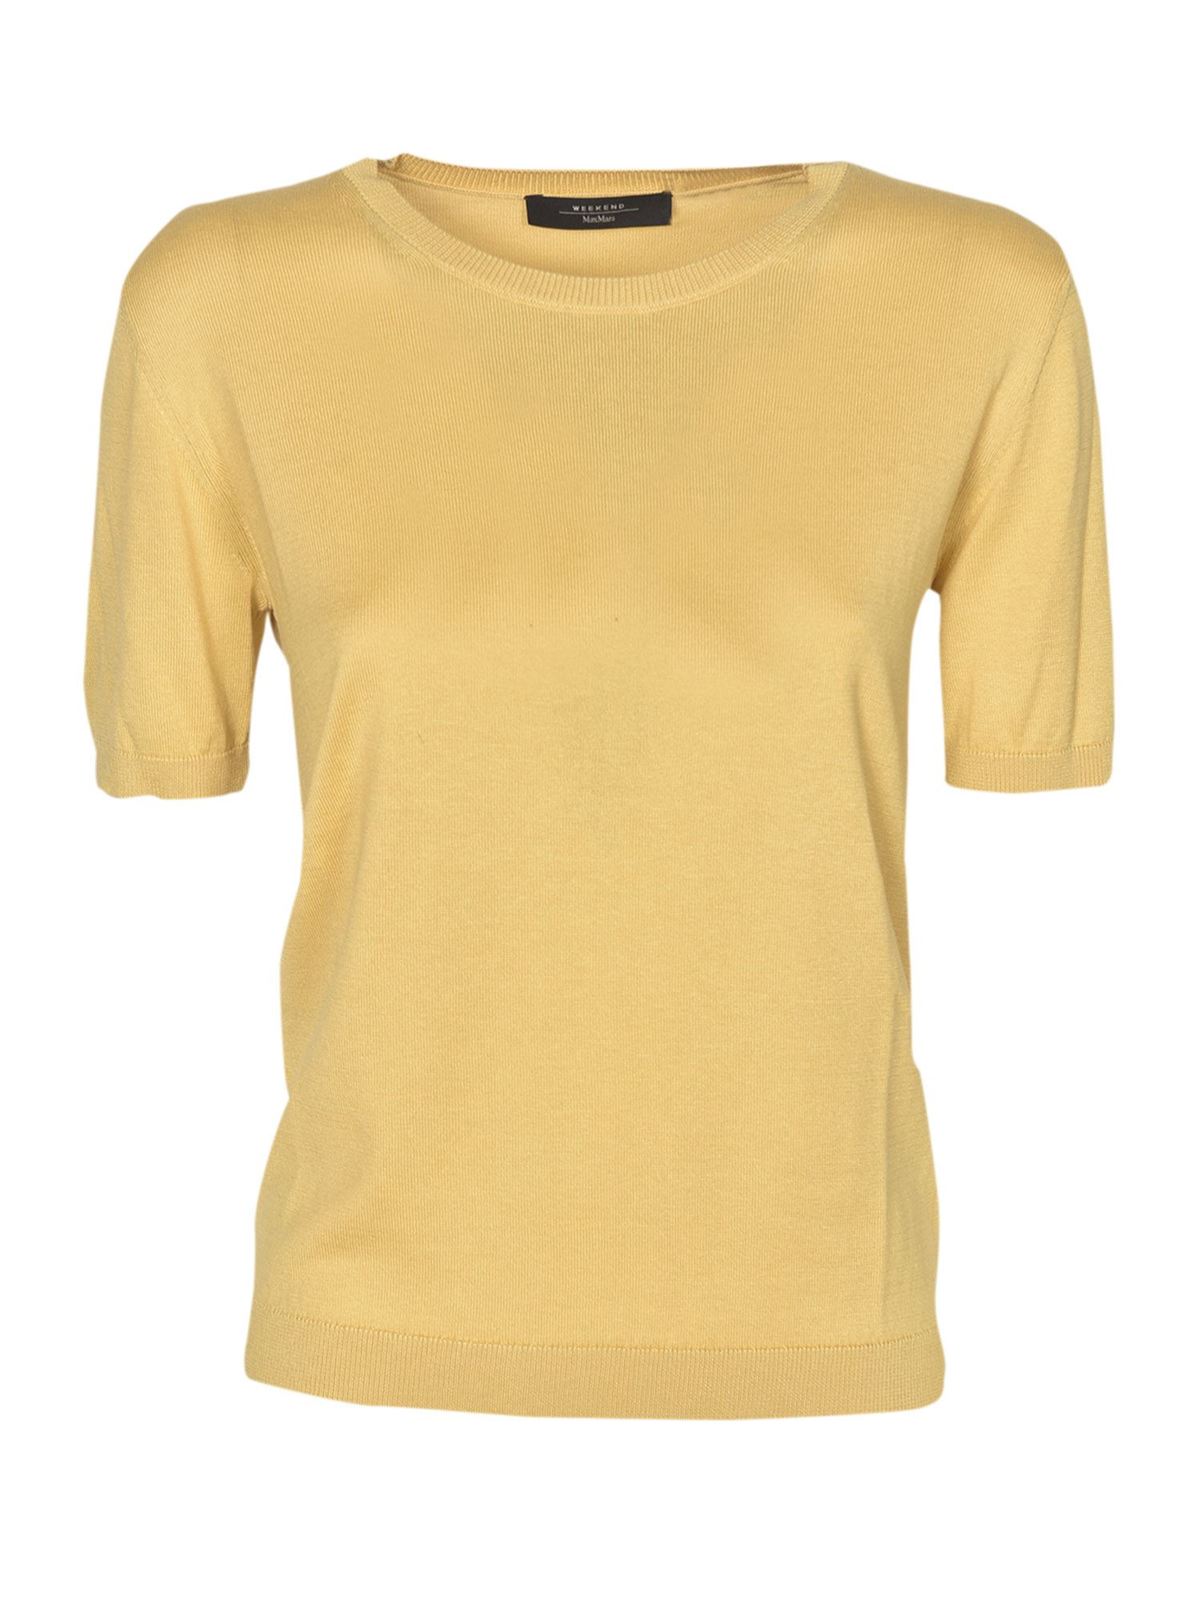 Weekend Max Mara - Cairo sweater in yellow - crew necks - 53610717650021